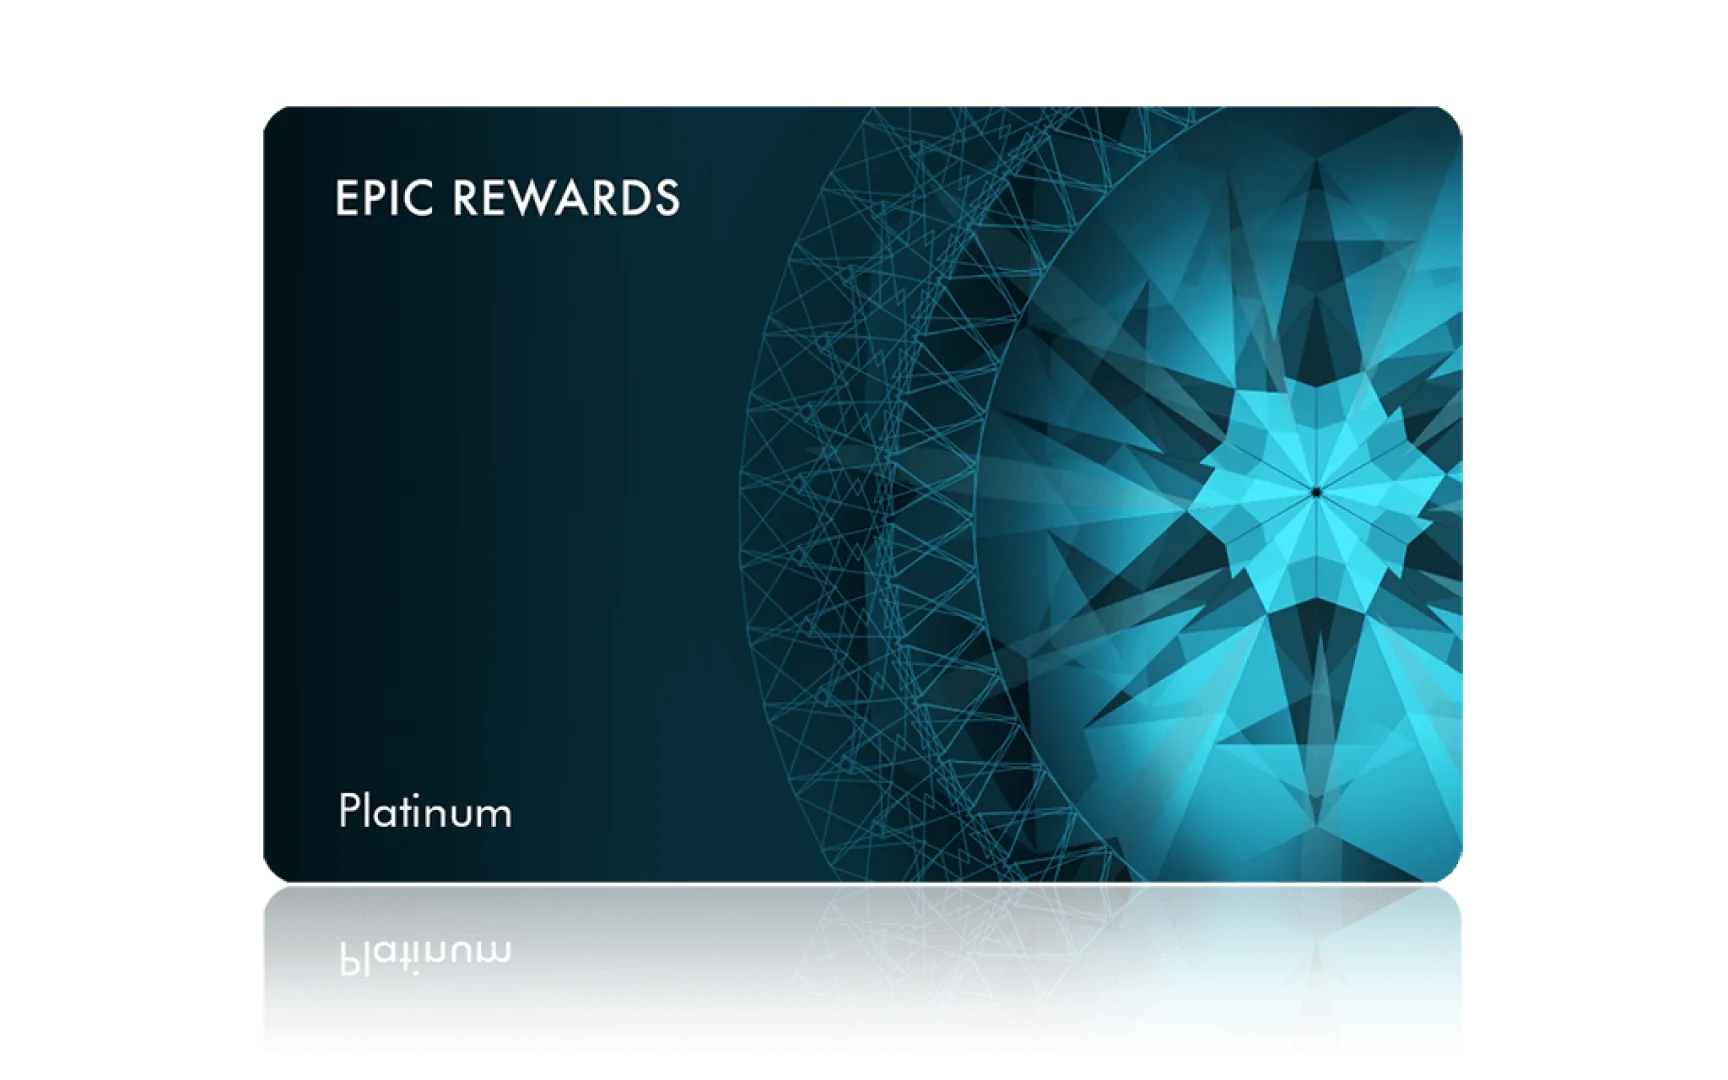 NWR epic-rewards-platinum